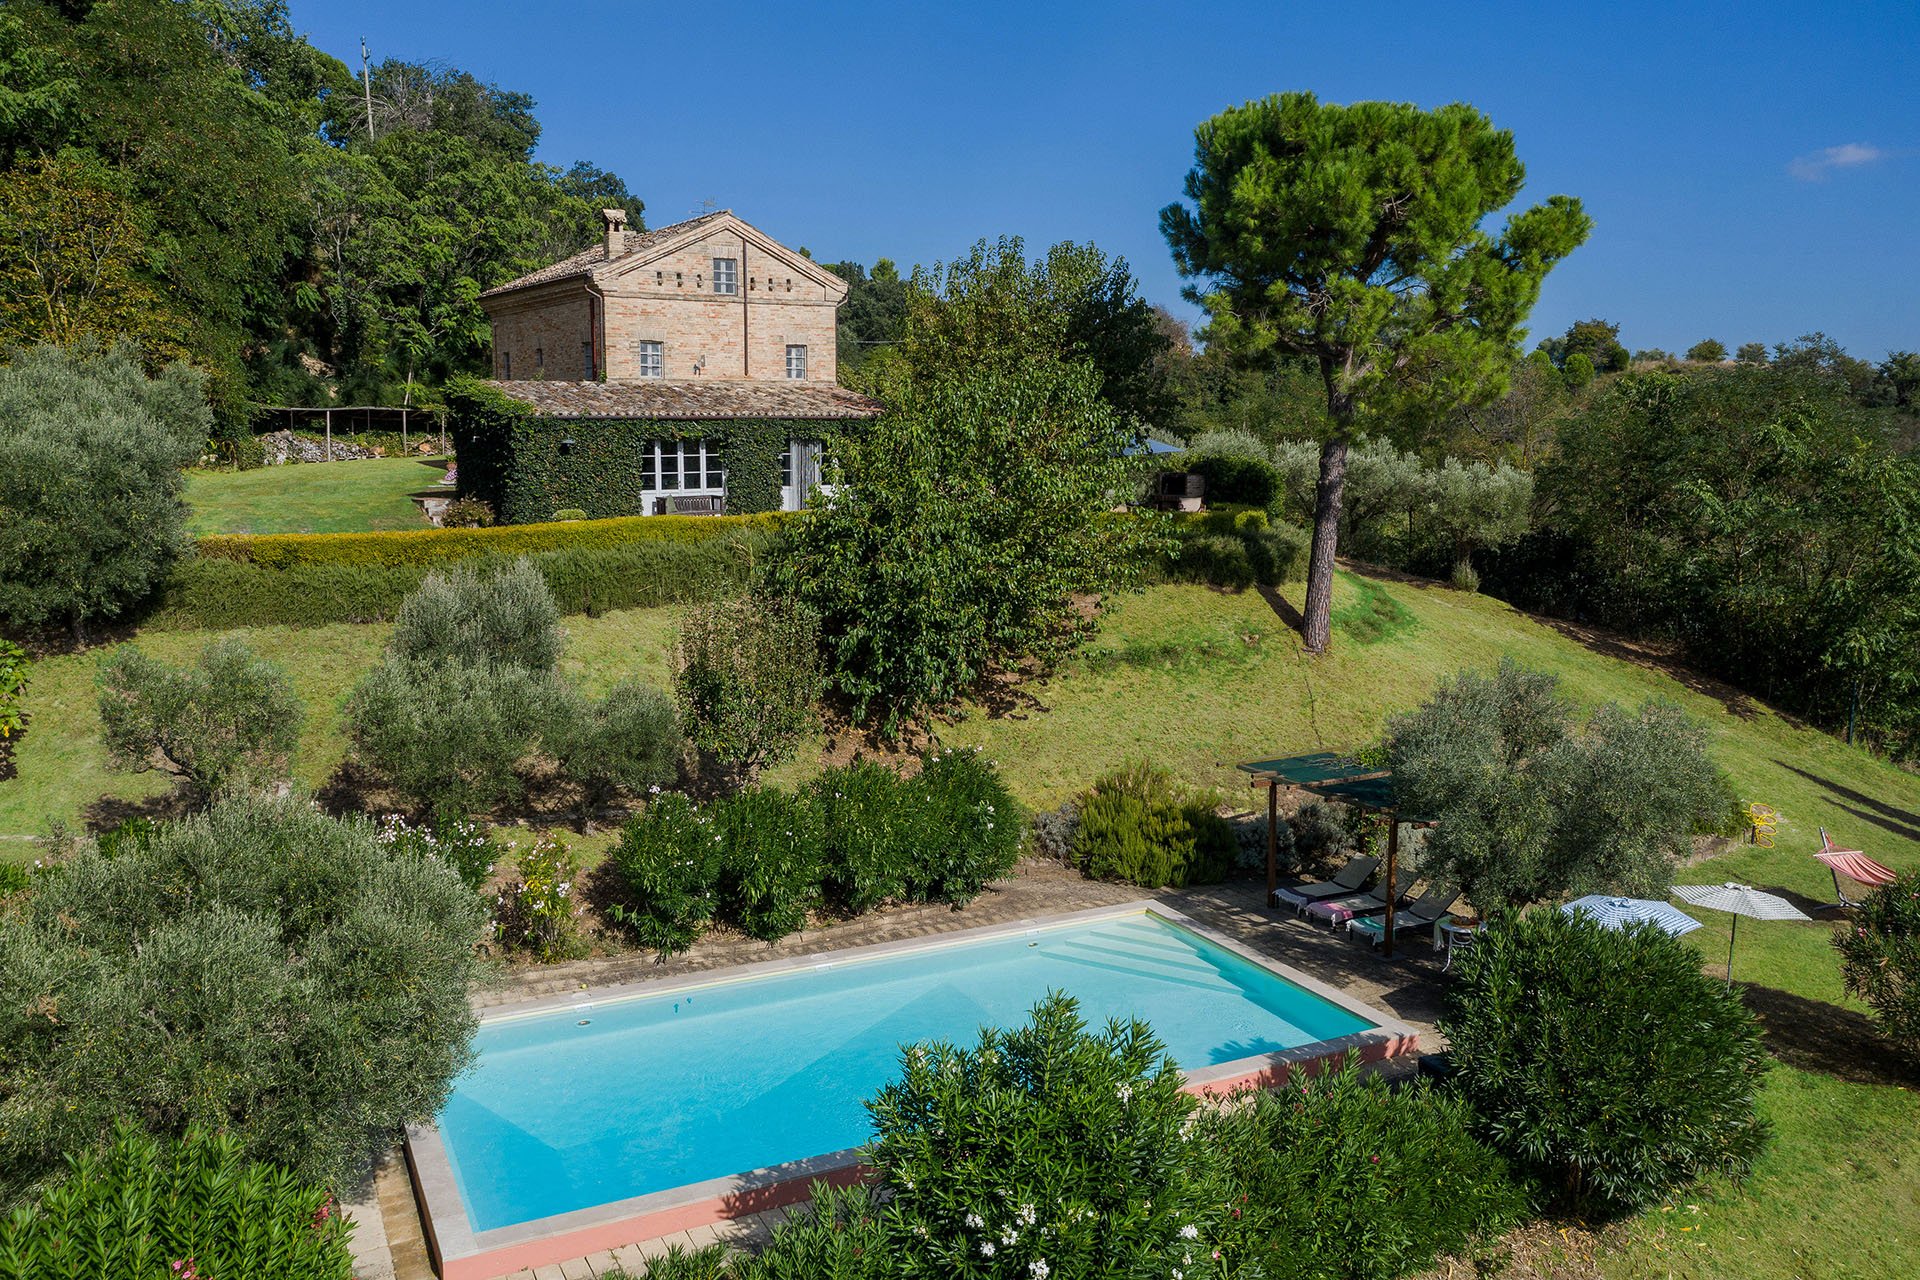 Casa Antonio - rent villa with pool in Le Marche region